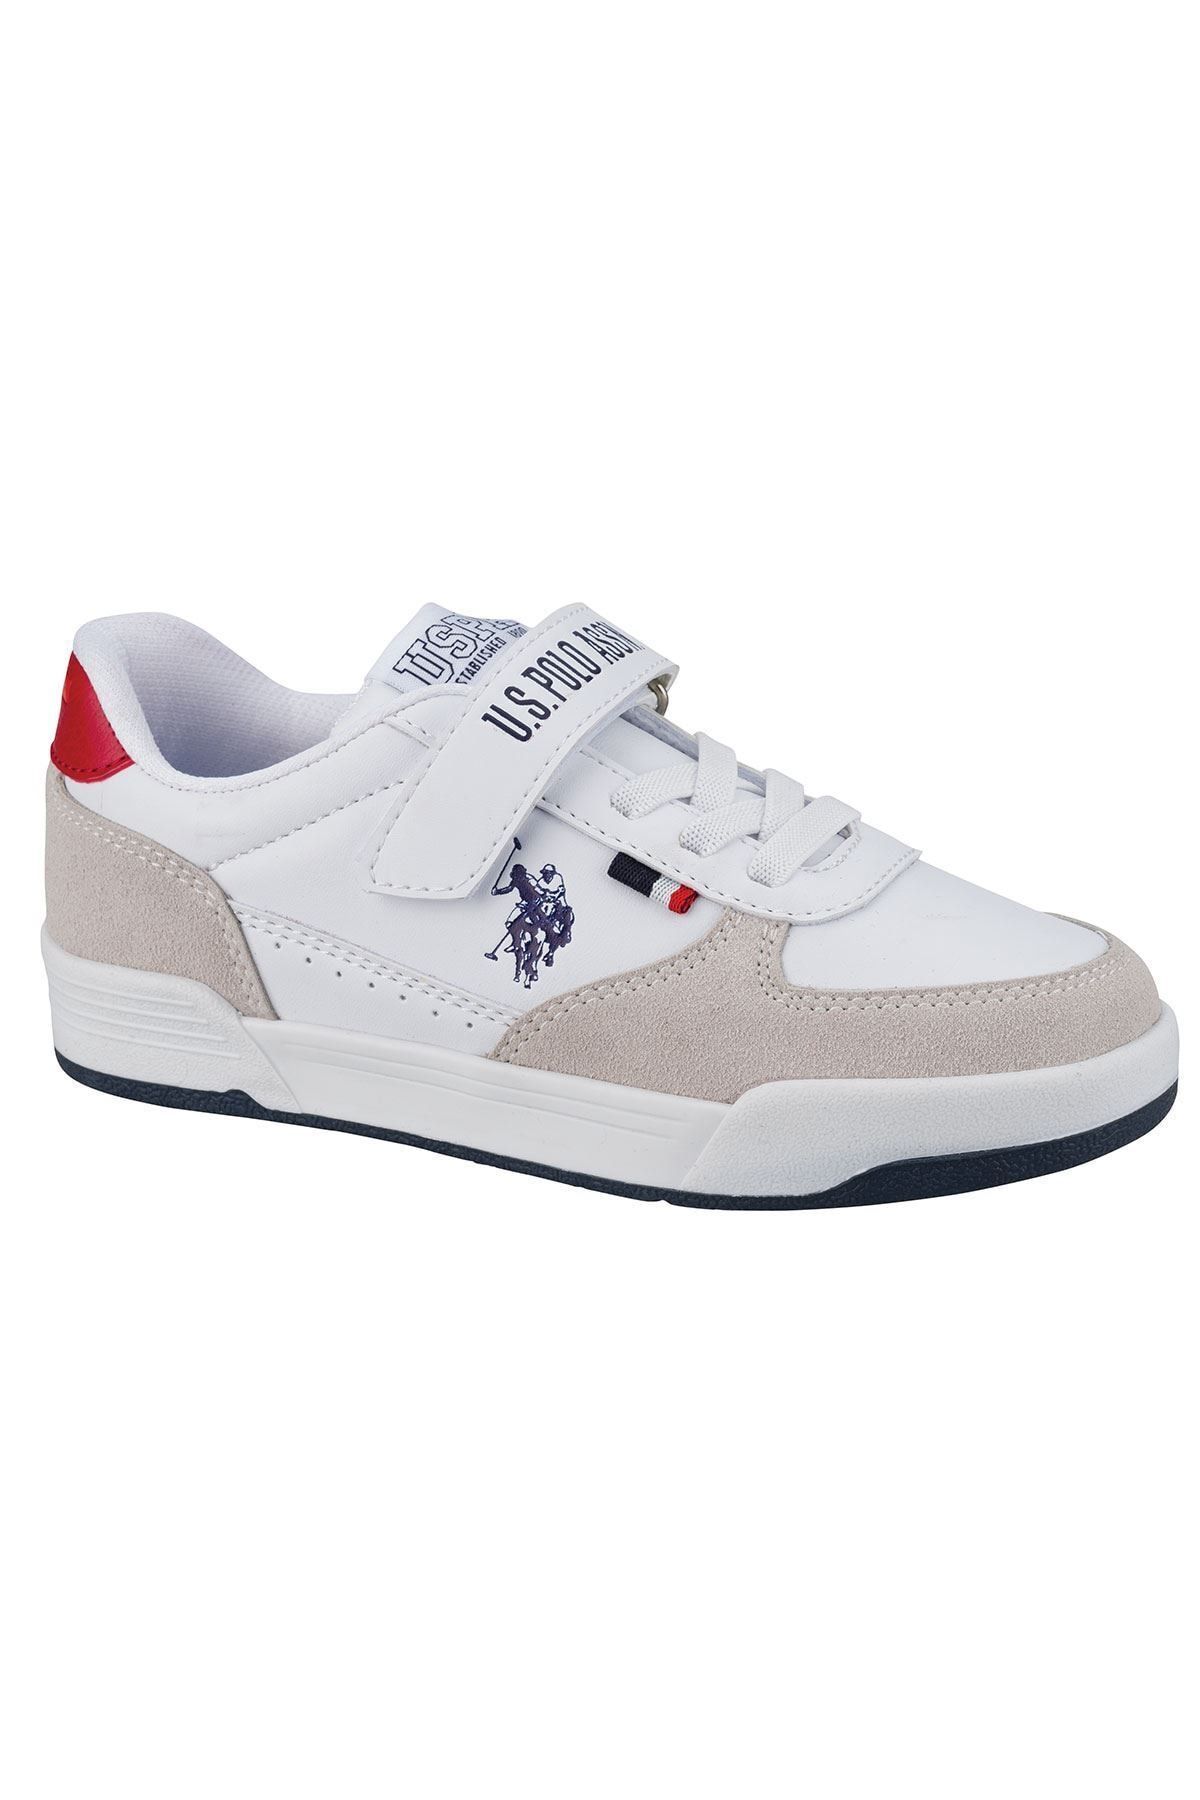 U.S. Polo Assn. CLINE JR Beyaz Erkek Çocuk Sneaker Ayakkabı 100601459